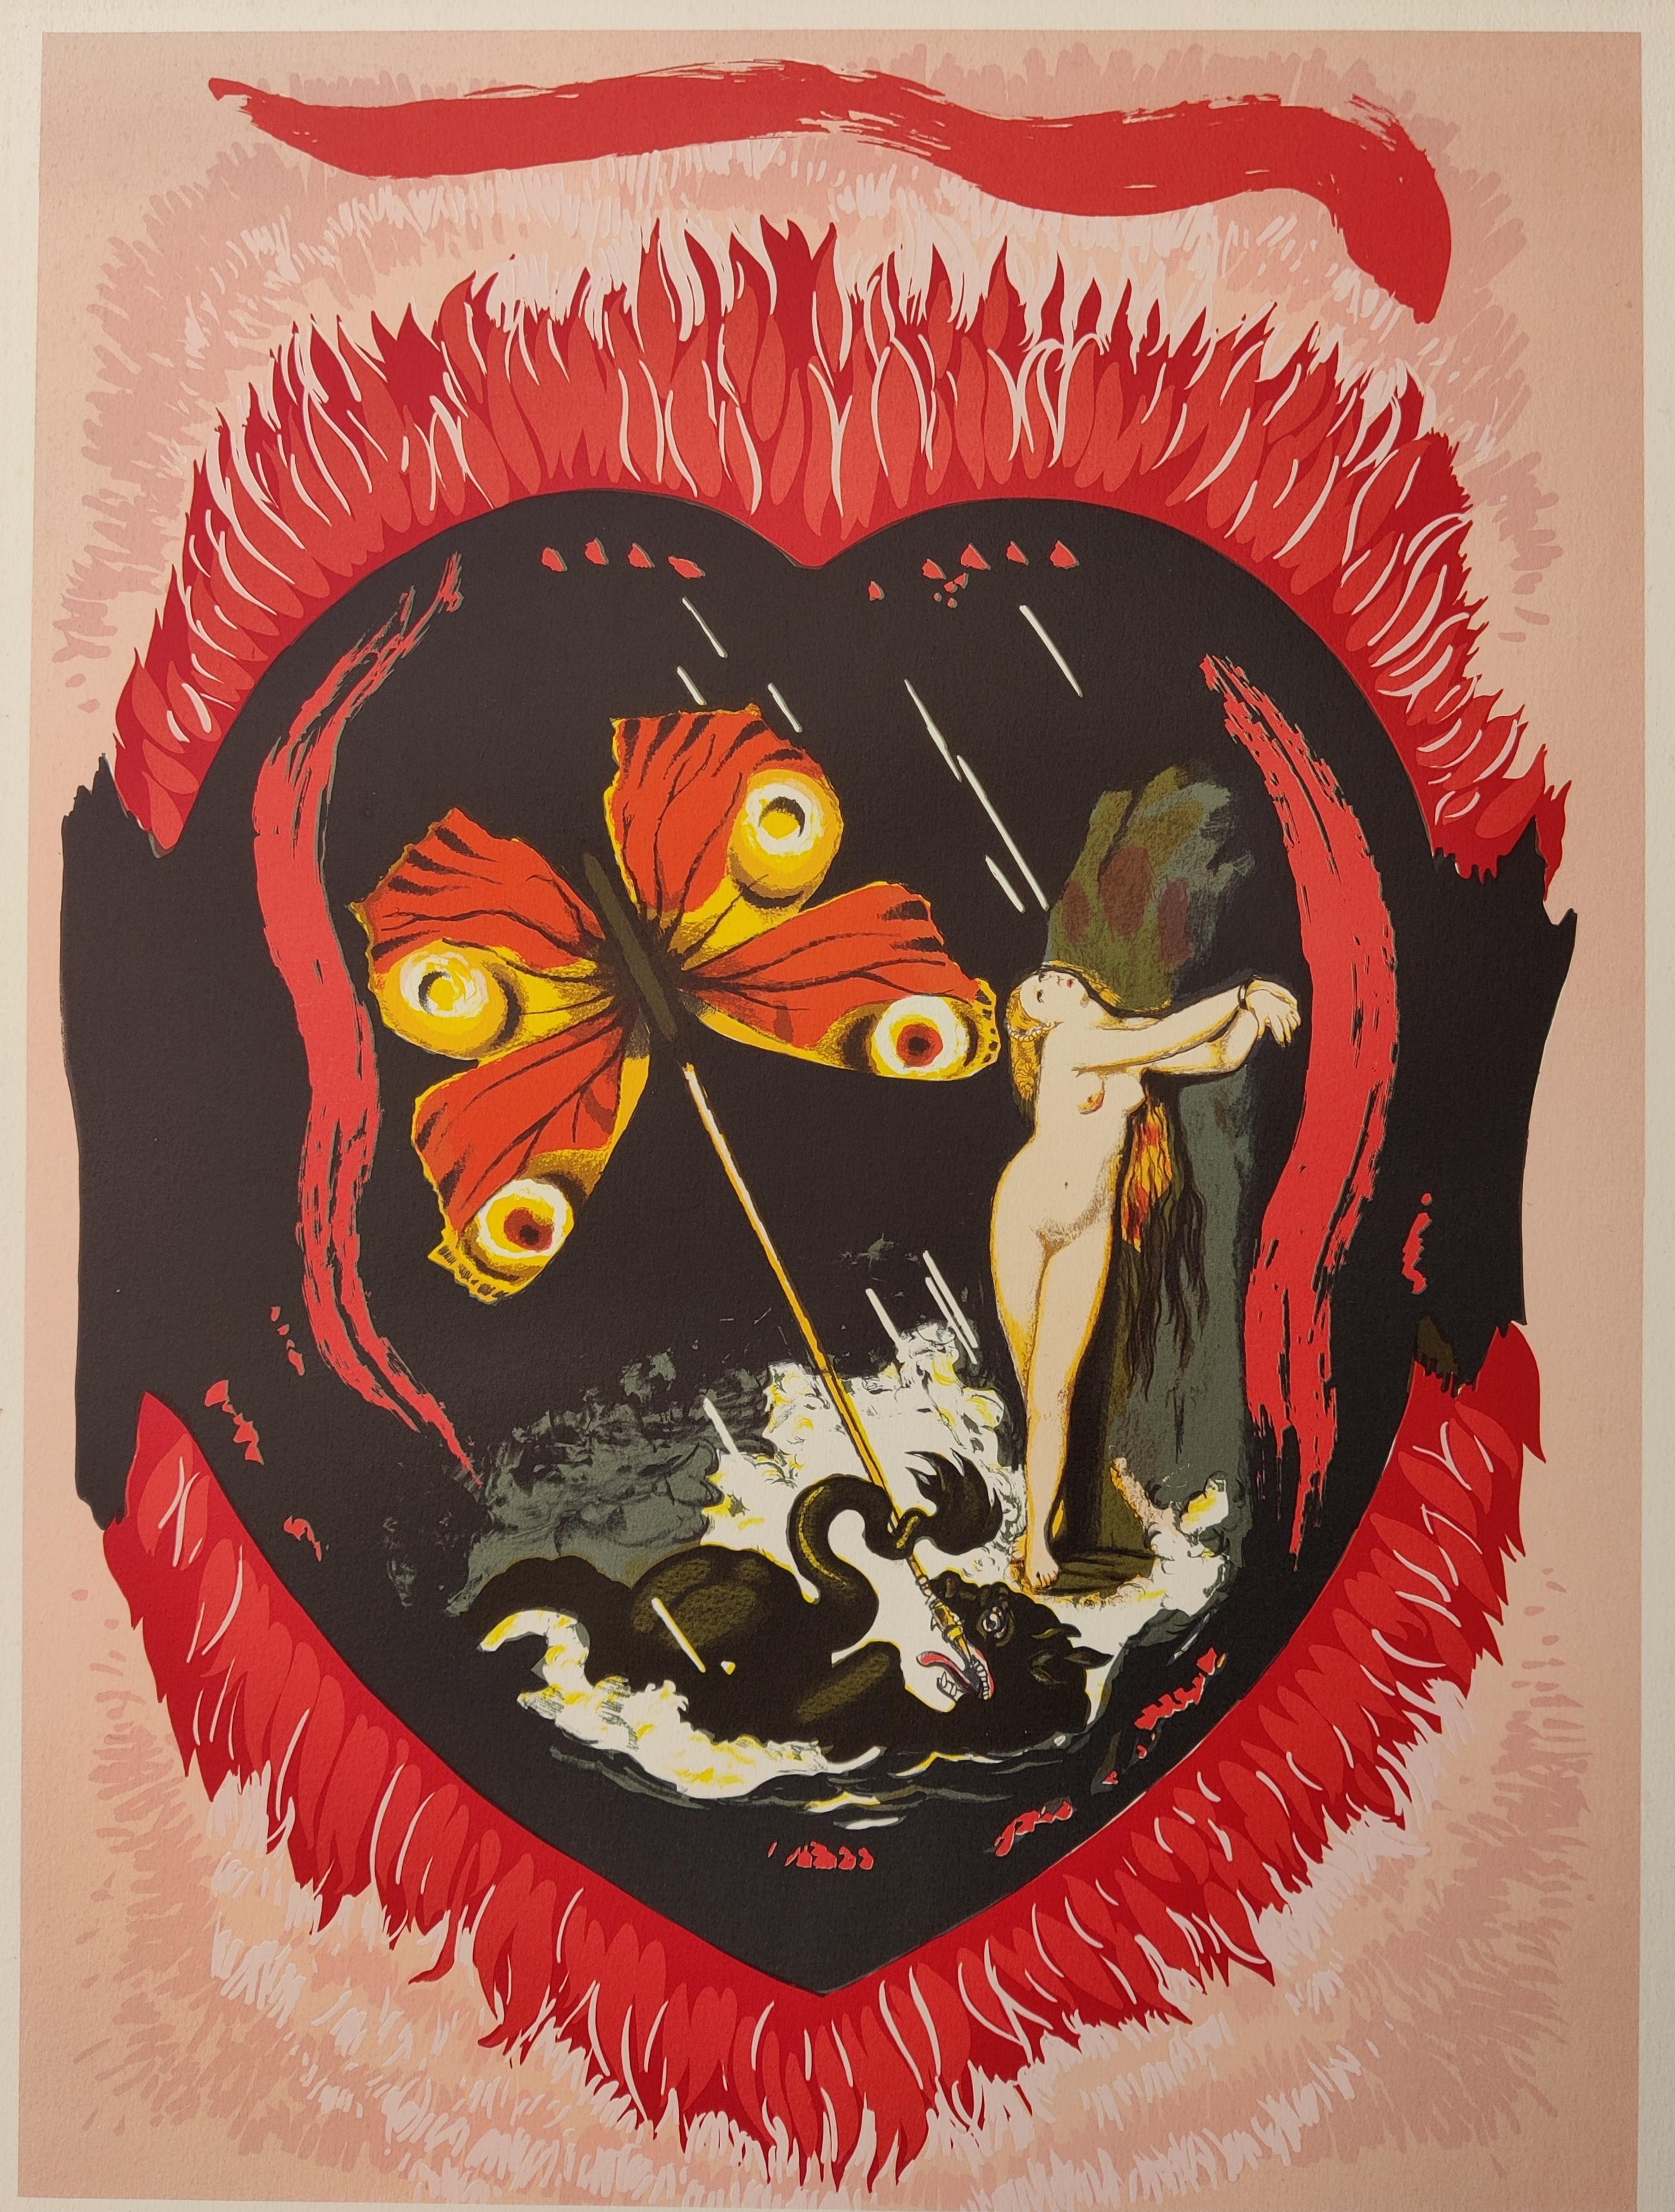 Salvador Dali
Le Triomphe, extrait du Triomphe de l'amour, 1978
Signé à la main en bas à droite
Numéroté A.C. 32 / 65
Taille de l'image : 58 x 55 cm
Taille de la feuille : 75 x 55 cm
Référence 78-4 A